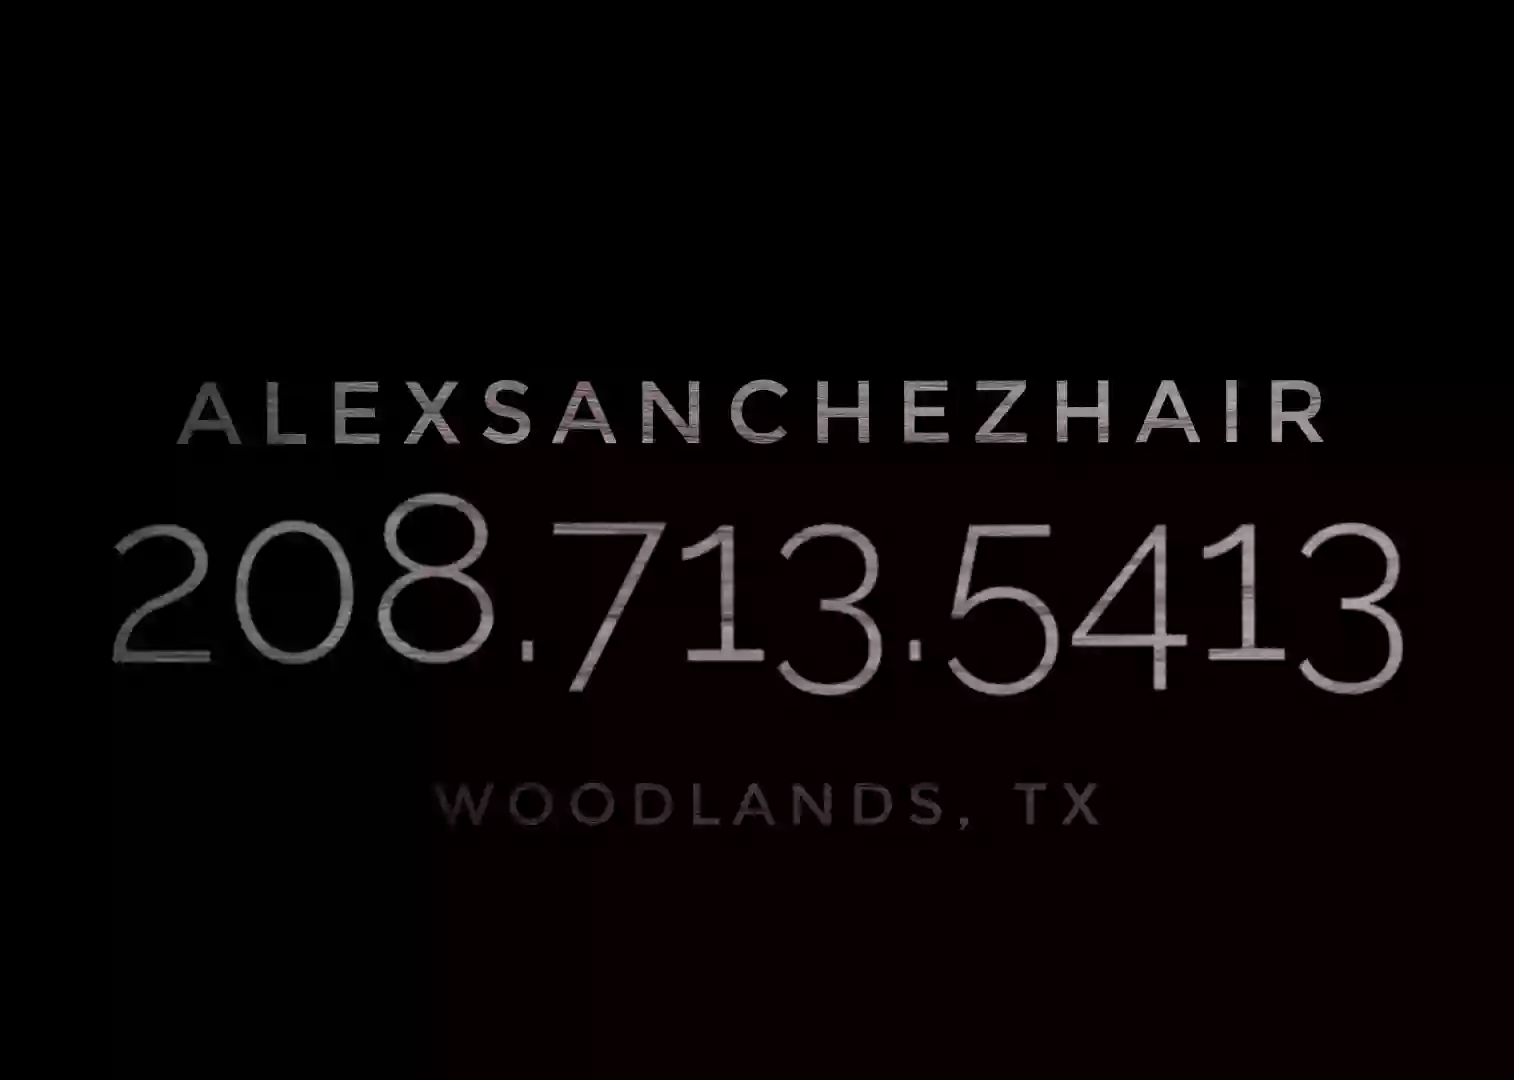 Alex Sanchez Hair